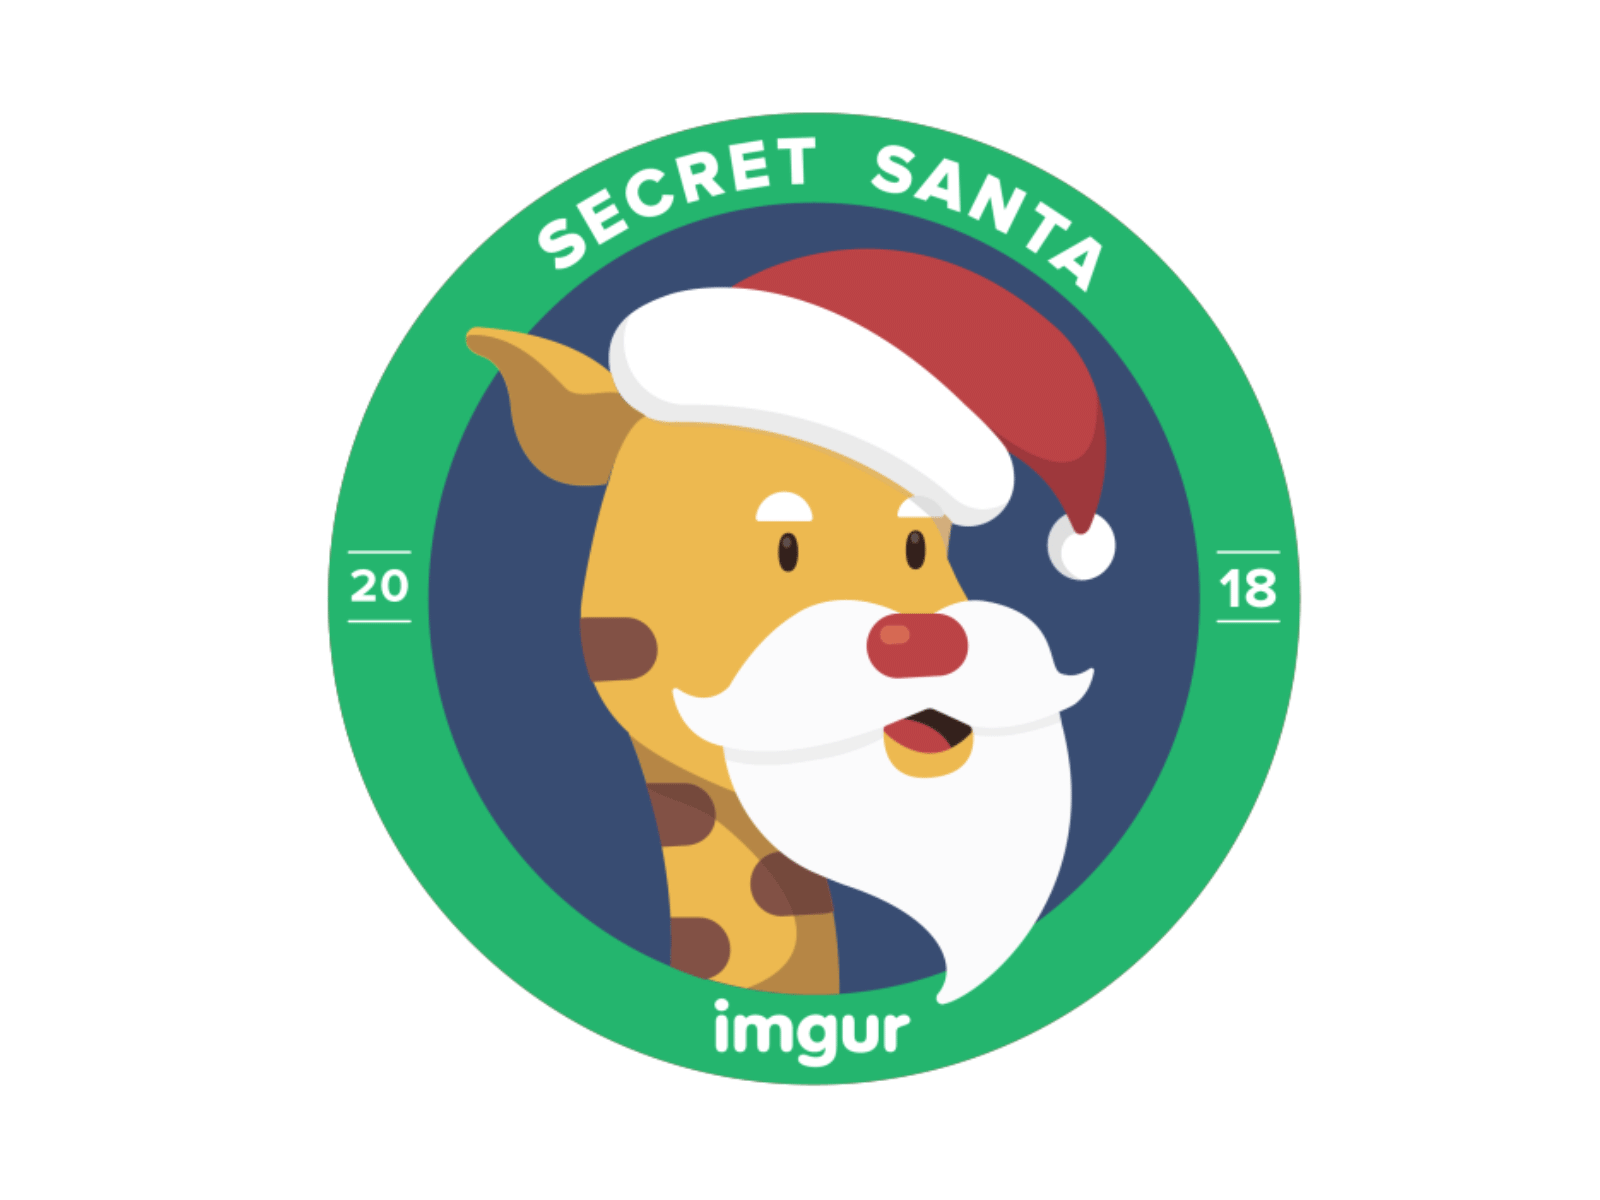 Imgur Secret Santa Animation giraffe imgur imguraffe secret santa